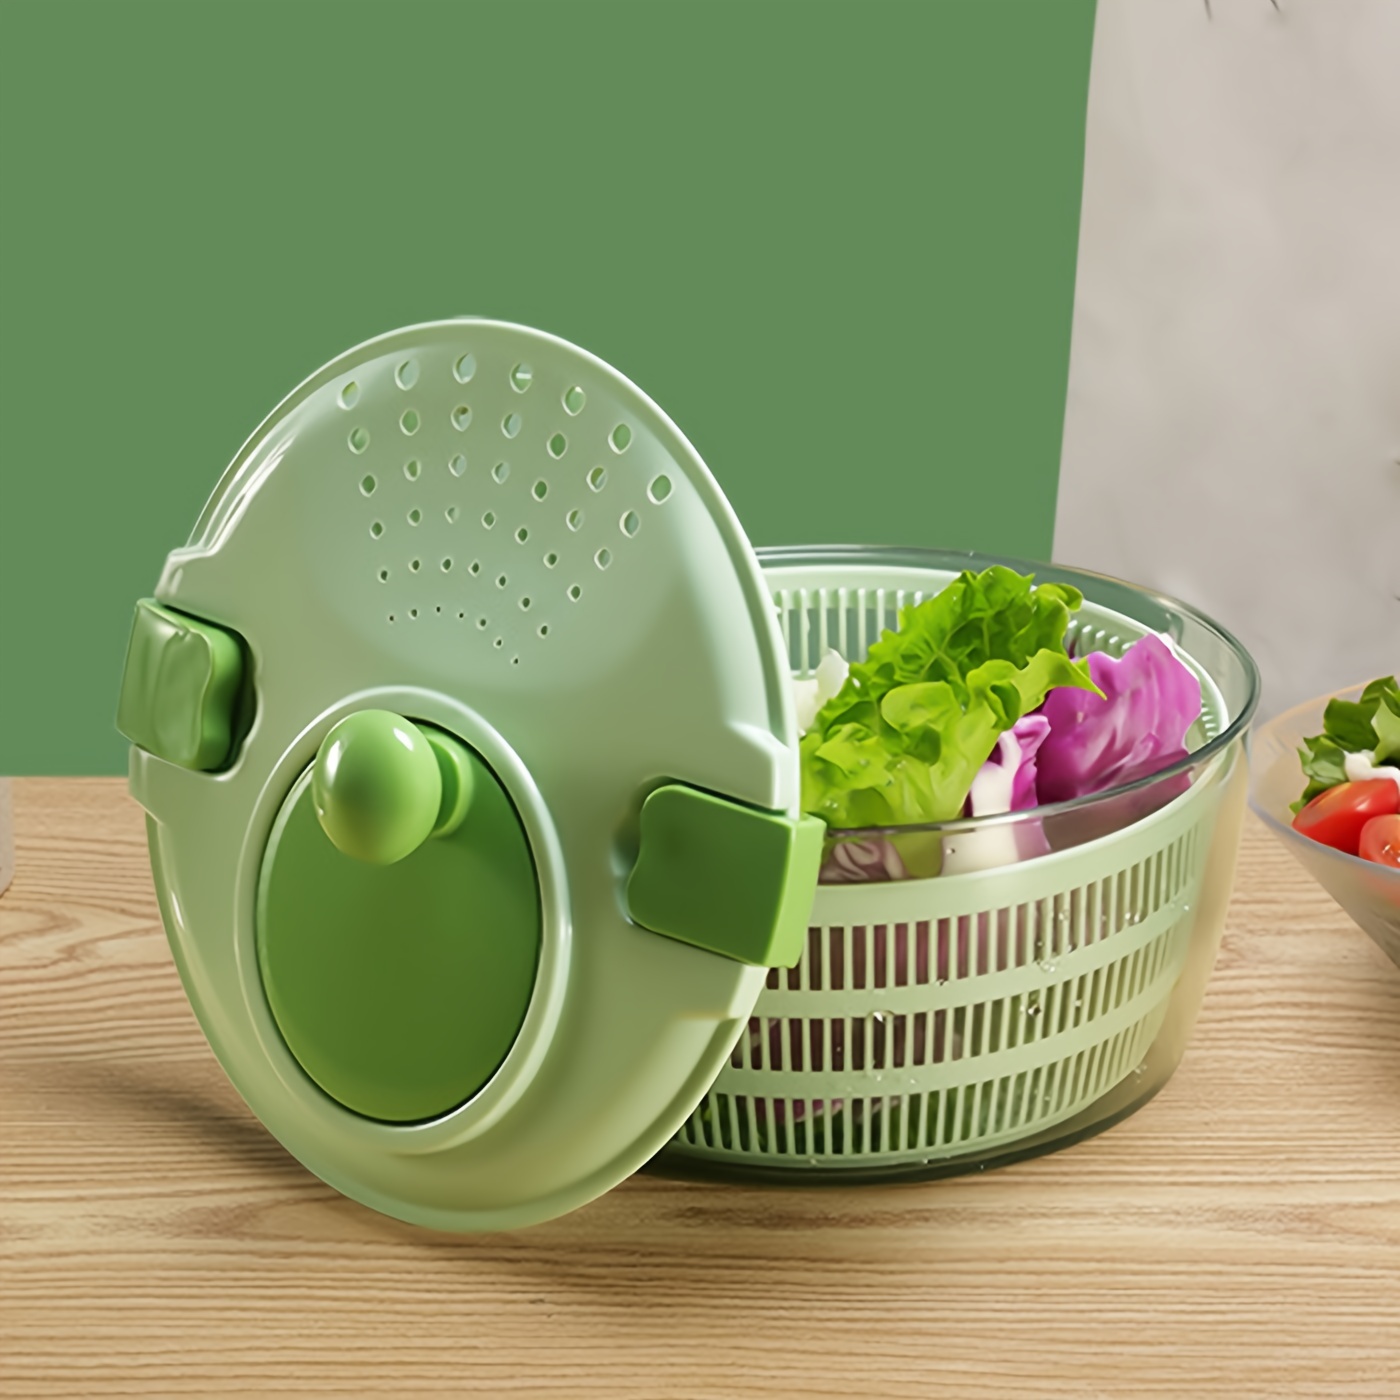 1pc Vegetable Spinner Dryer, Manual Fruit Cleaner, Commercial